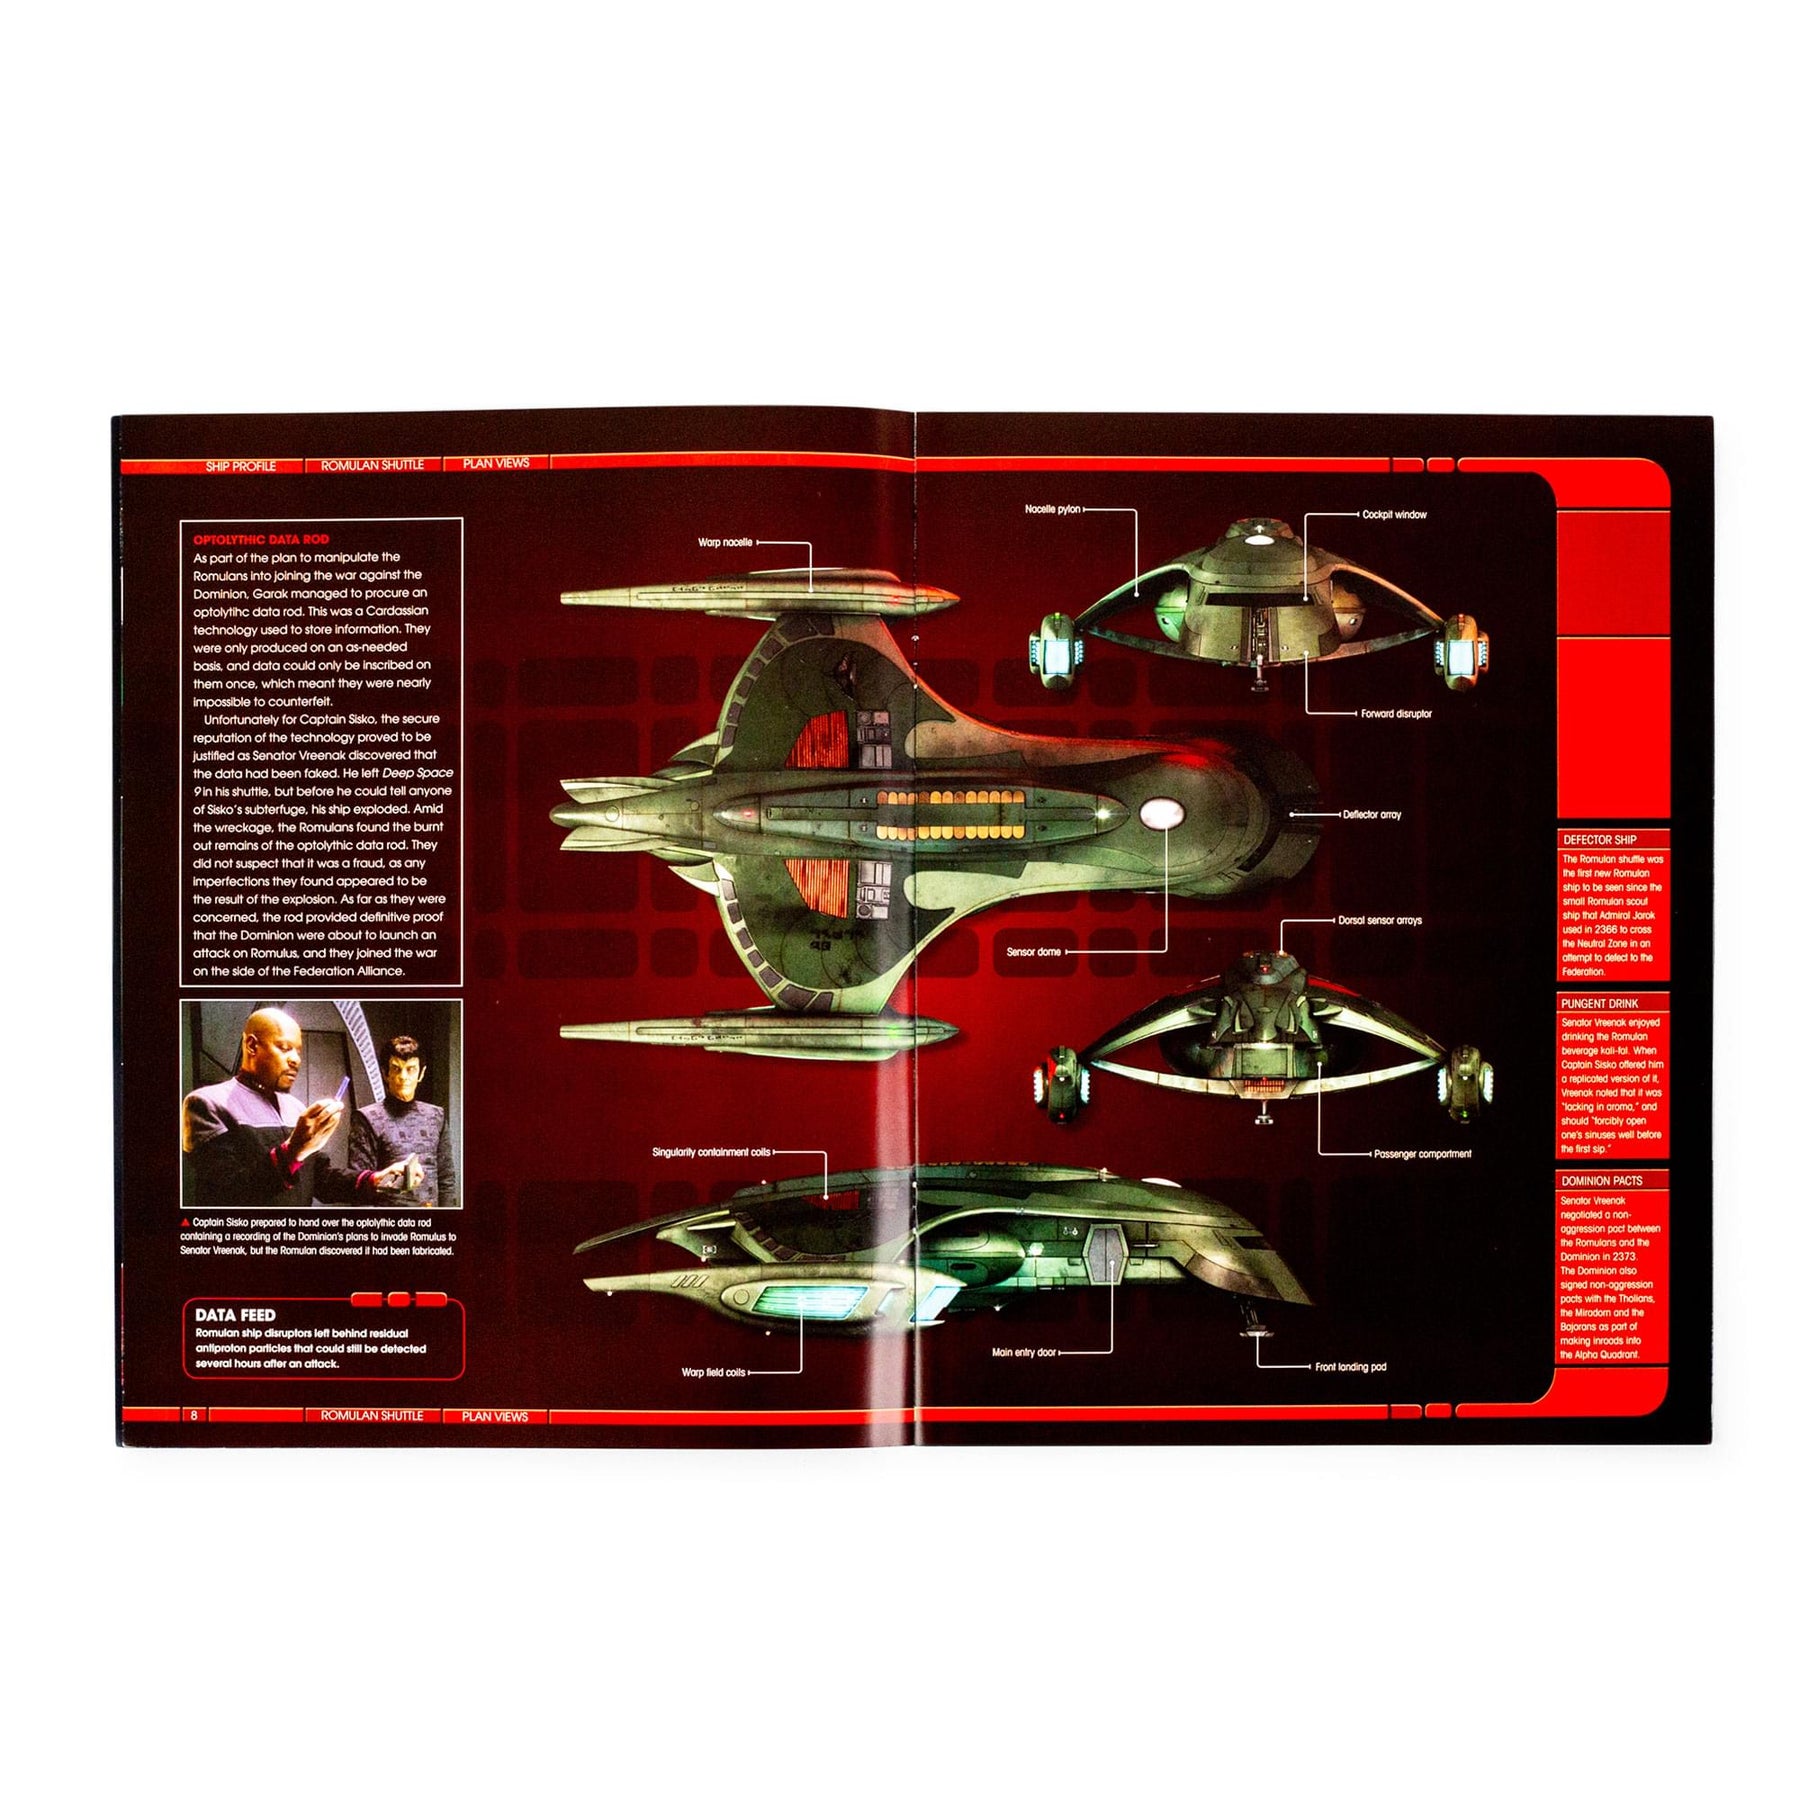 Star Trek Starships Romulan Shuttle Magazine | Issue #77